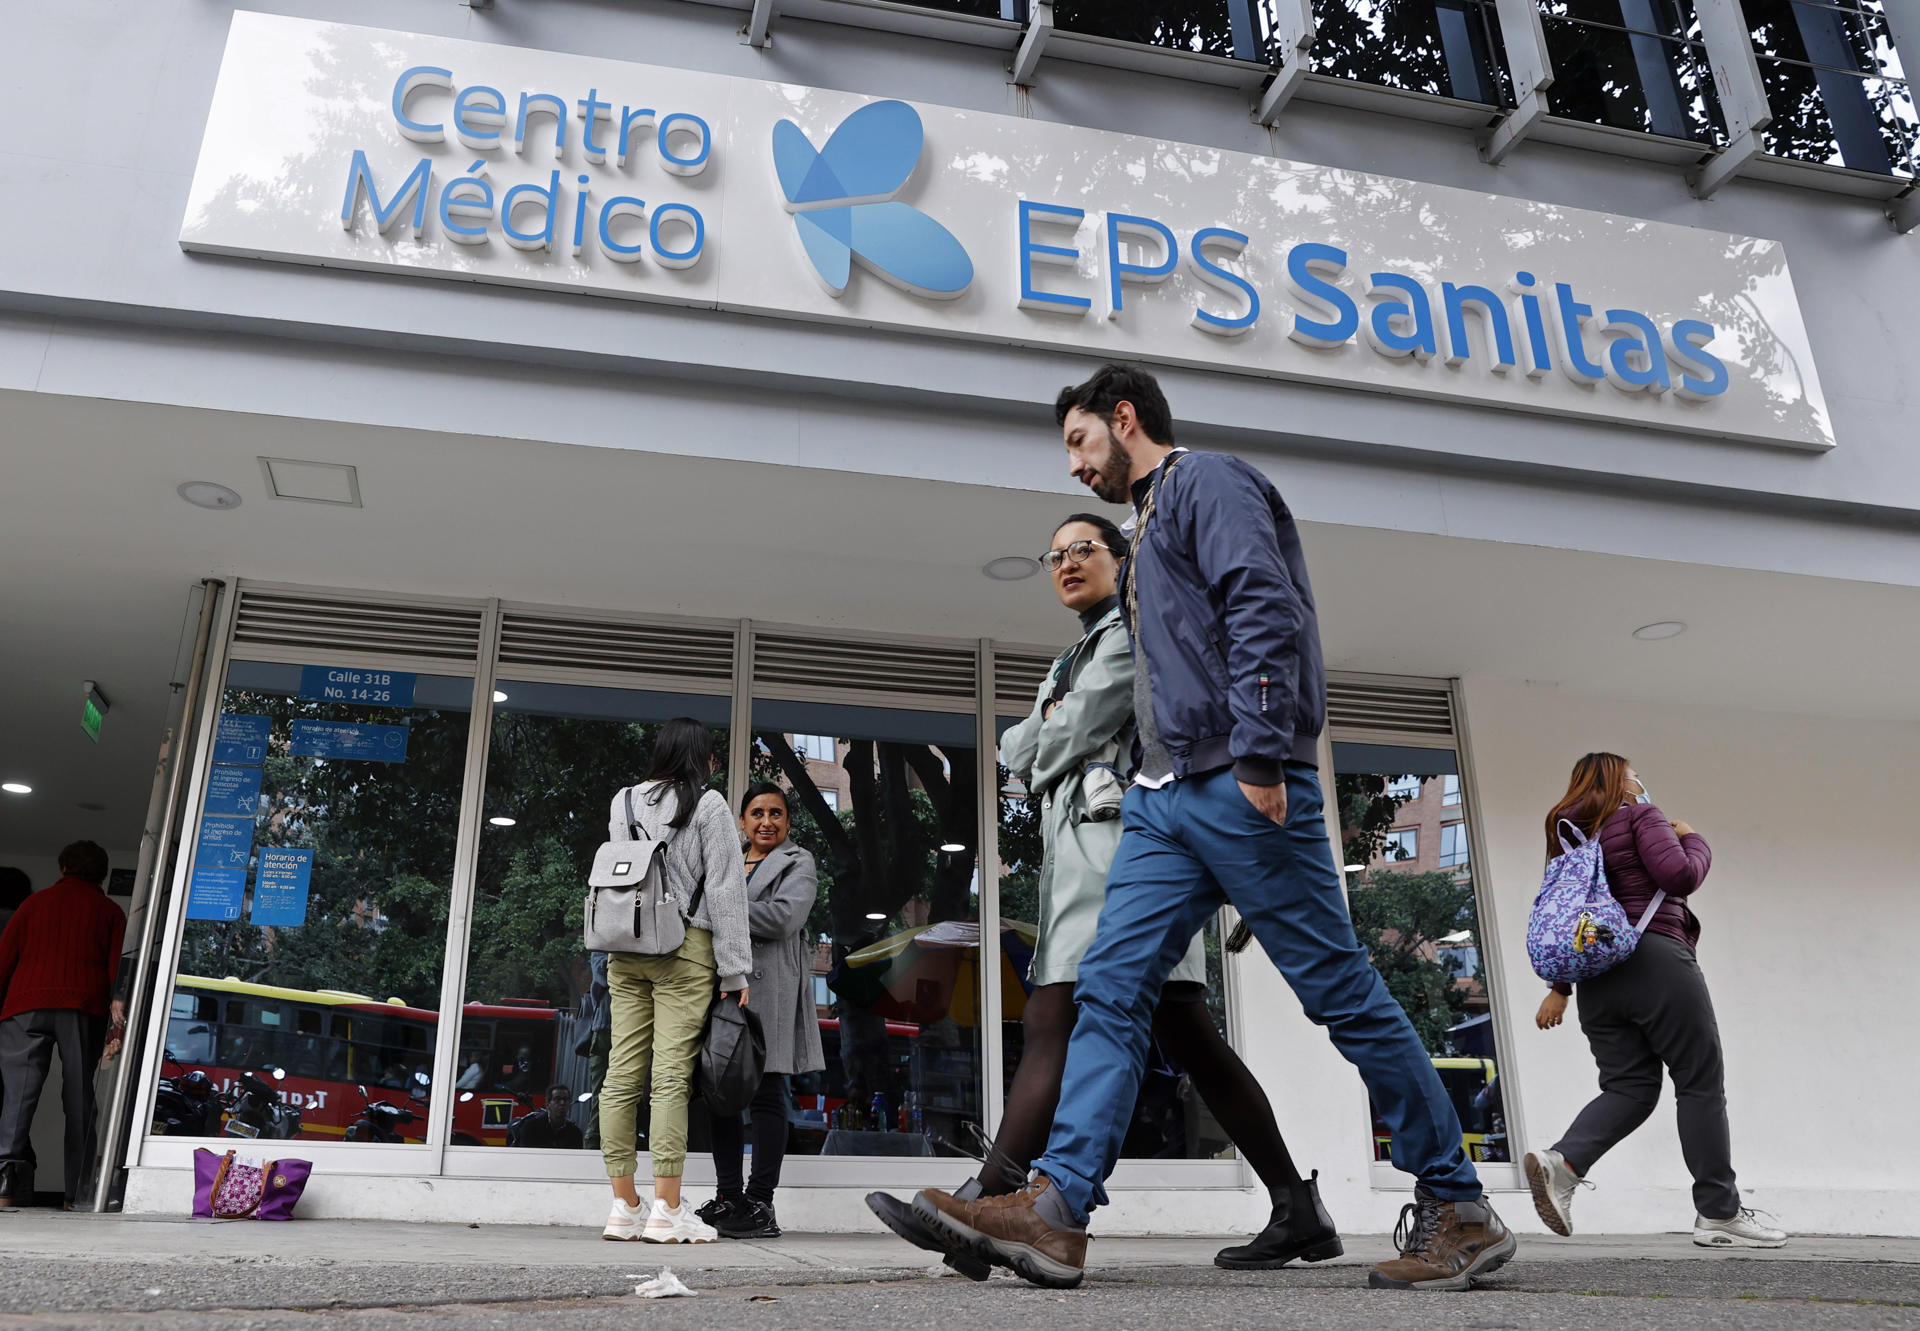 Personas caminan frente a un centro médico de la EPS Sanitas este miércoles en Bogotá (Colombia). La estatal Superintendencia de Salud (Supersalud) intervino el martes 02 de abril, por un periodo de un año, a la entidad prestadora de salud (EPS) Sanitas, a la que están asociadas casi seis millones de personas en Colombia, por supuesta insolvencia en la crisis que enfrentan varias empresas del sector en el país. EFE/Mauricio Dueñas Castañeda